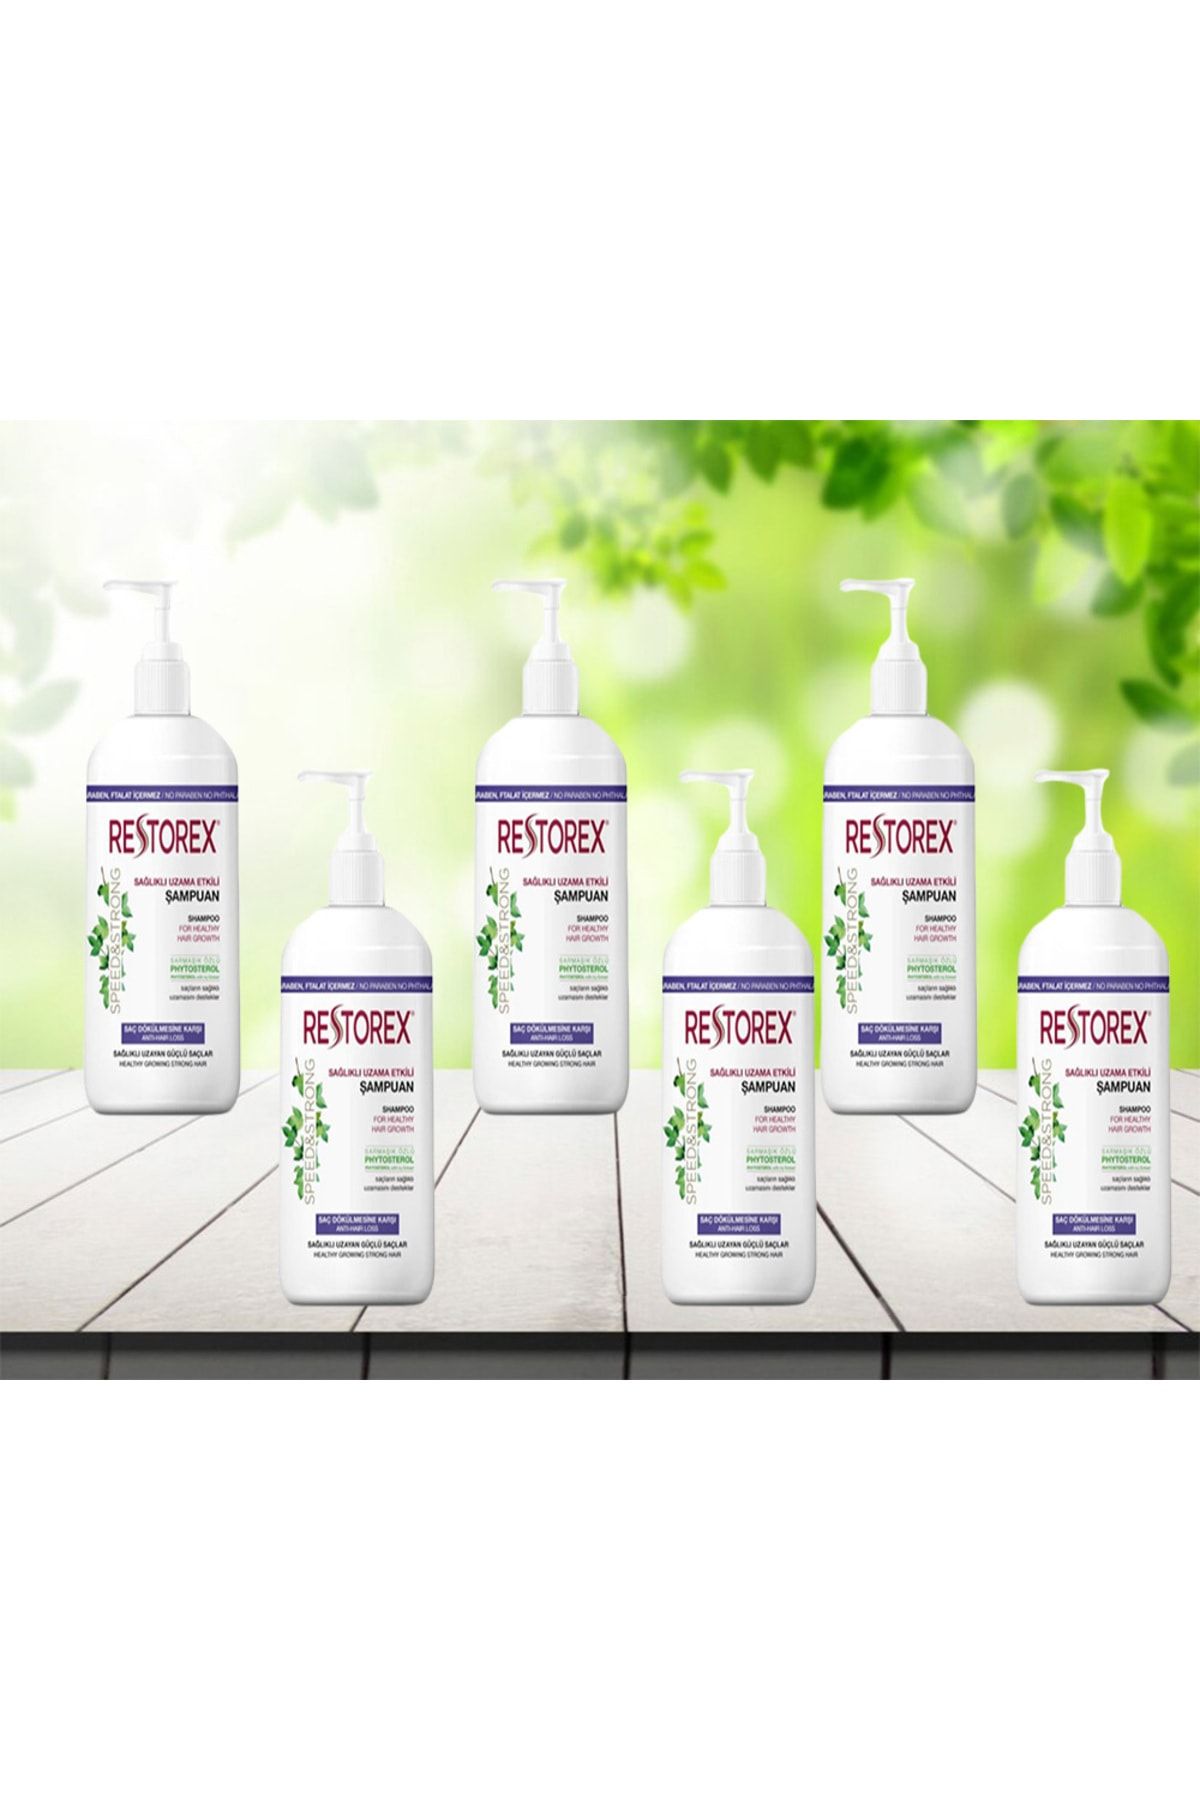 Restorex Saç Dökülmesine Karşı Sarmaşık Özlü Ekstra Direnç Şampuan 1000 ml 6 adet